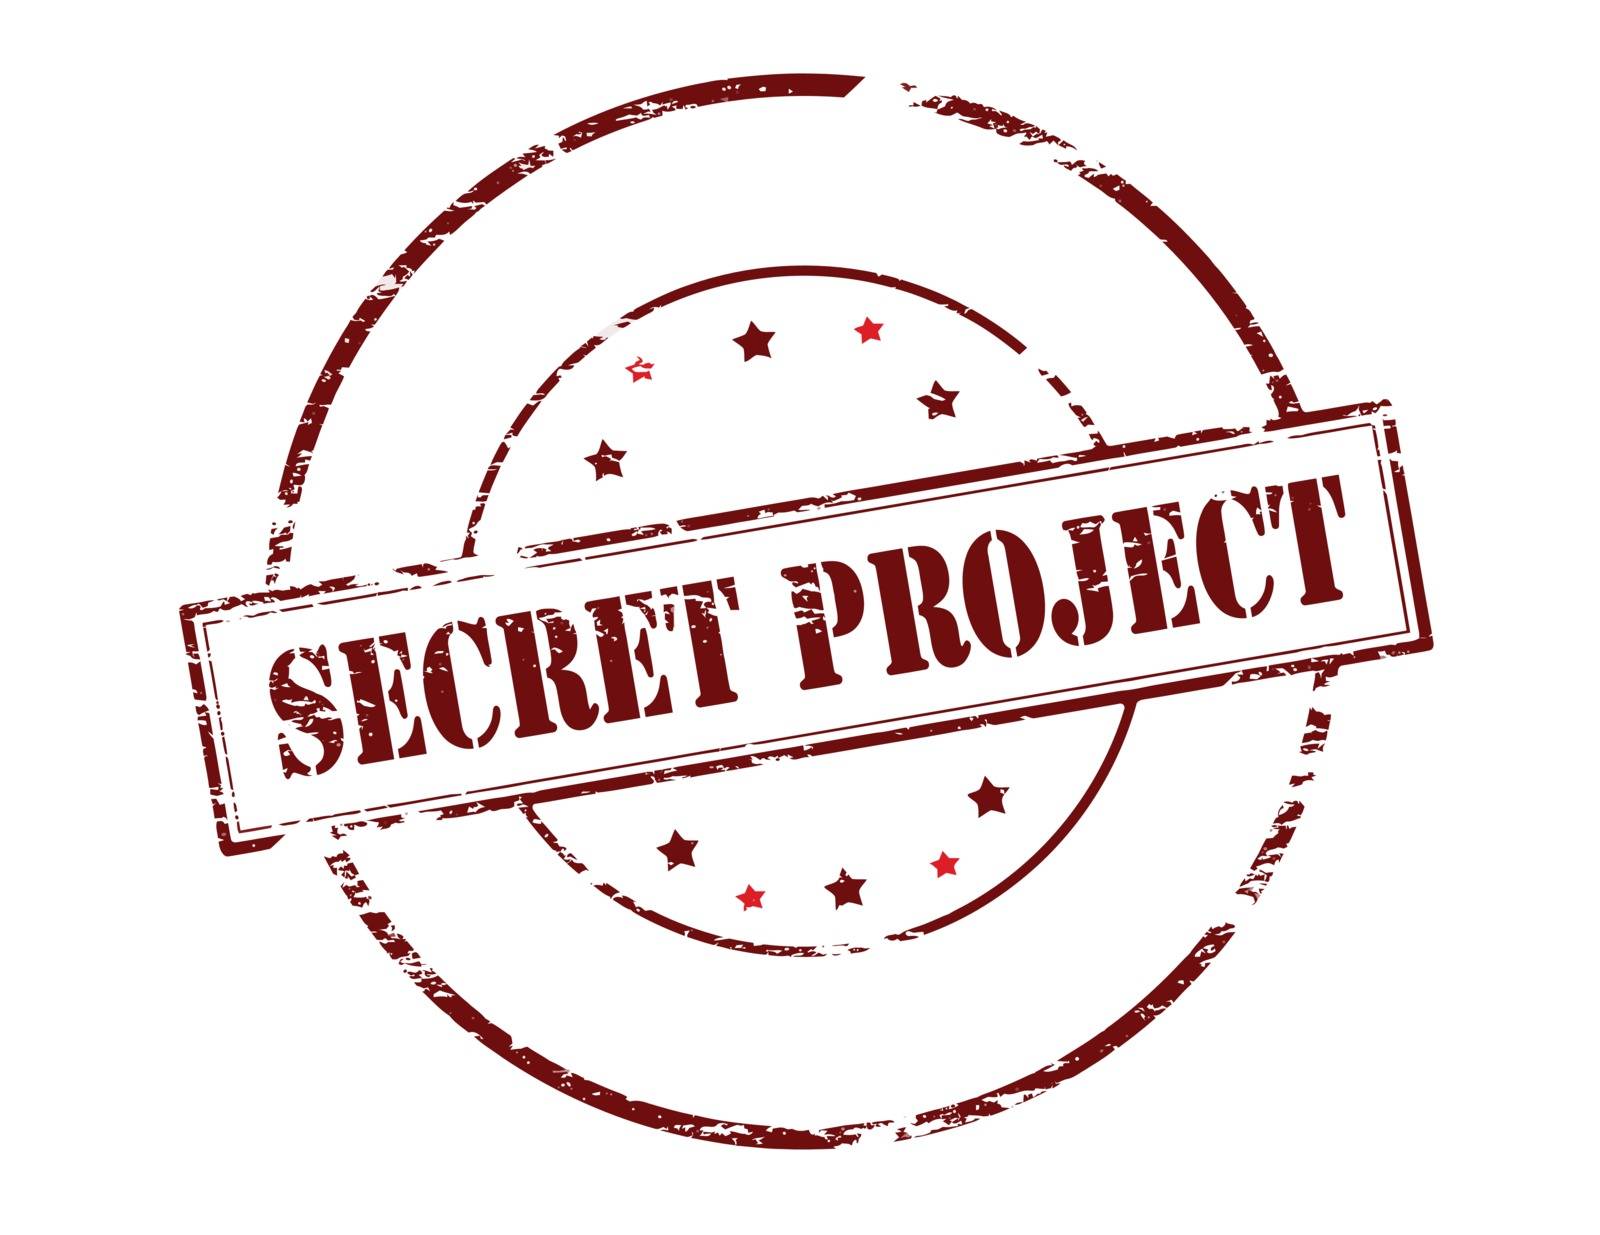 Secret project by carmenbobo